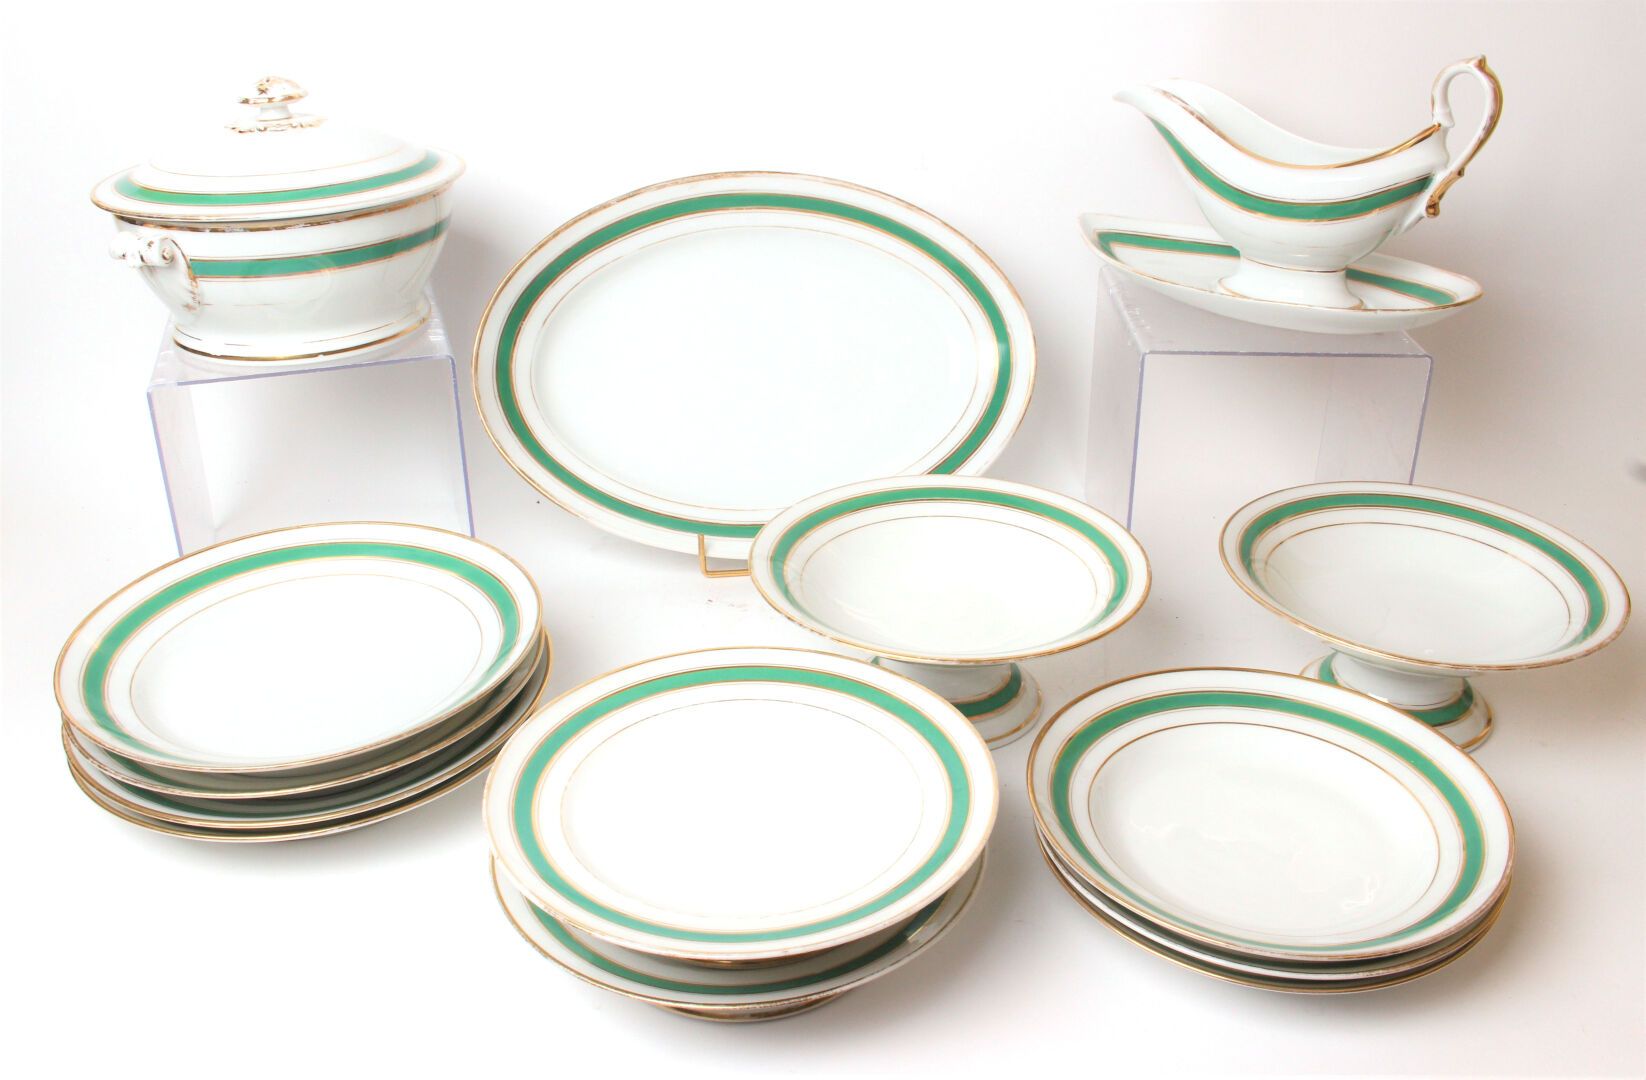 Null 利莫盖斯

绿色和金色网状装饰的瓷器服务套装，包括基座上的展示架，十二个汤盘和两个餐盘。

(筹码)